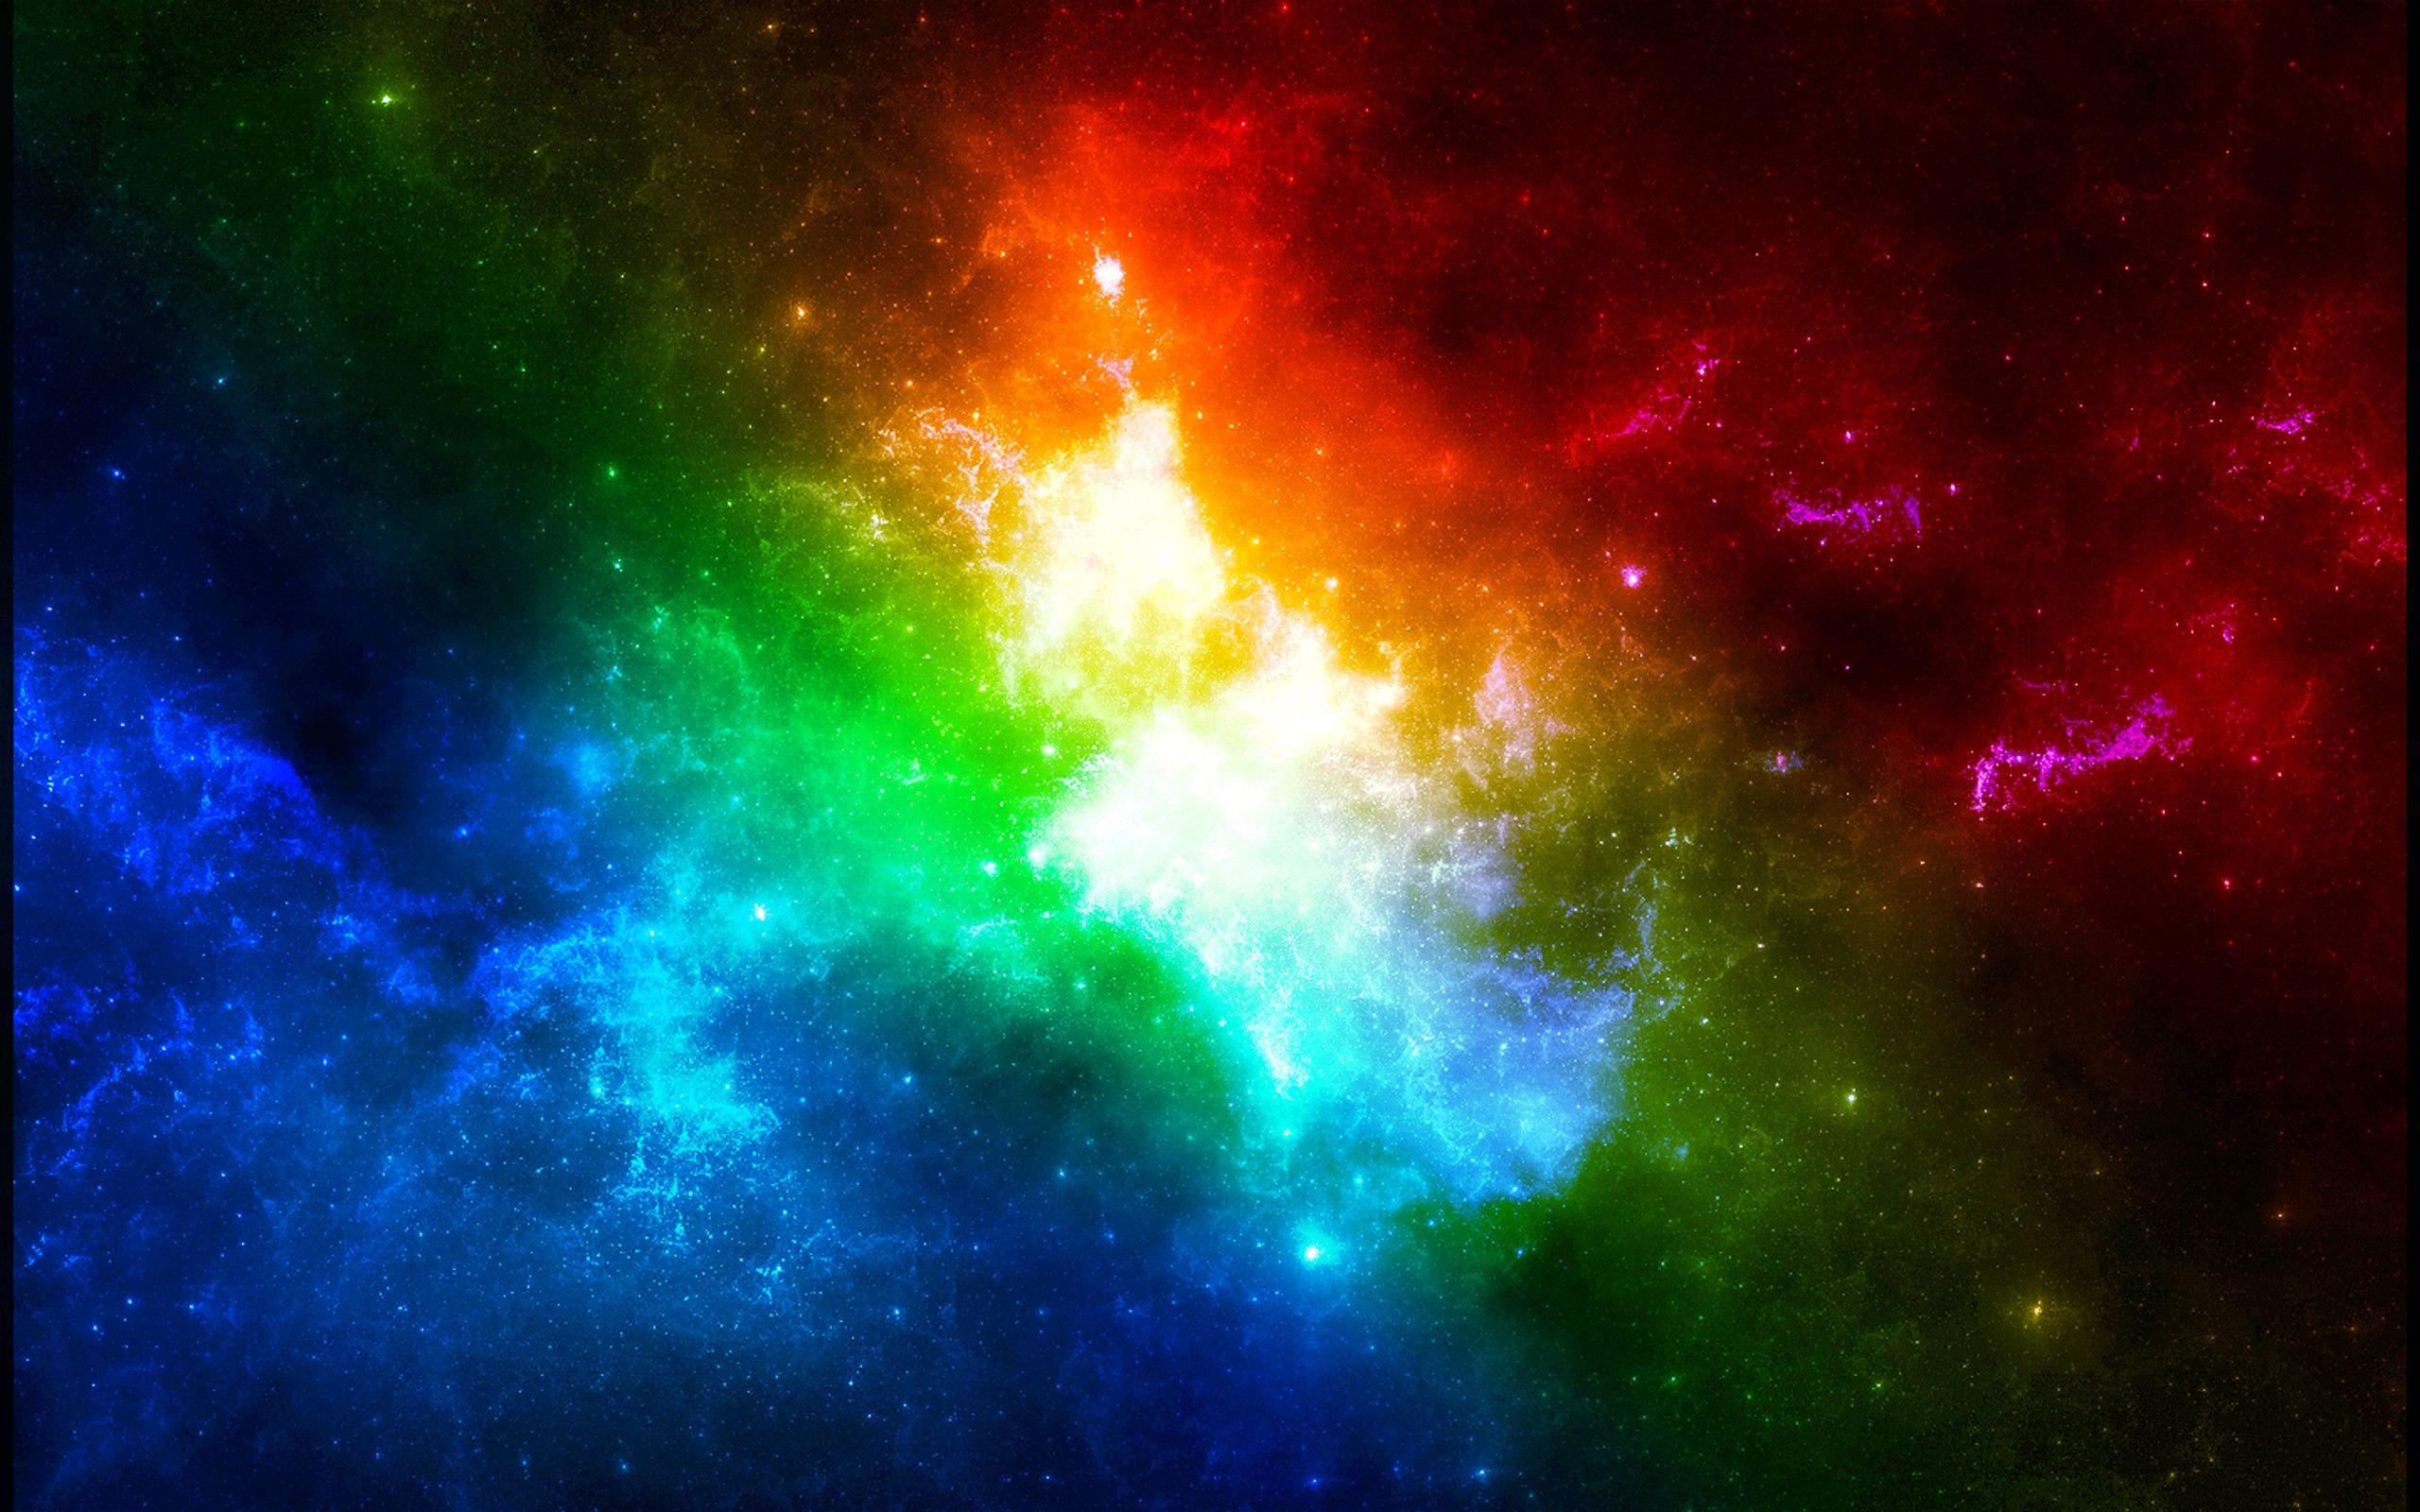 Với hình nền đa màu sắc về các thiên hà trên WallpaperDog, bạn sẽ được trải nghiệm một thế giới vũ trụ tuyệt đẹp cùng với những màu sắc tuyệt vời nhất. Tình yêu của bạn với thiên văn học sẽ được thổi bay với bộ sưu tập hình nền độc đáo và đẹp mắt này. Hãy tìm kiếm và tải về ngay để thưởng thức những bức ảnh đẹp nhất về địa hình bí ẩn của vũ trụ.